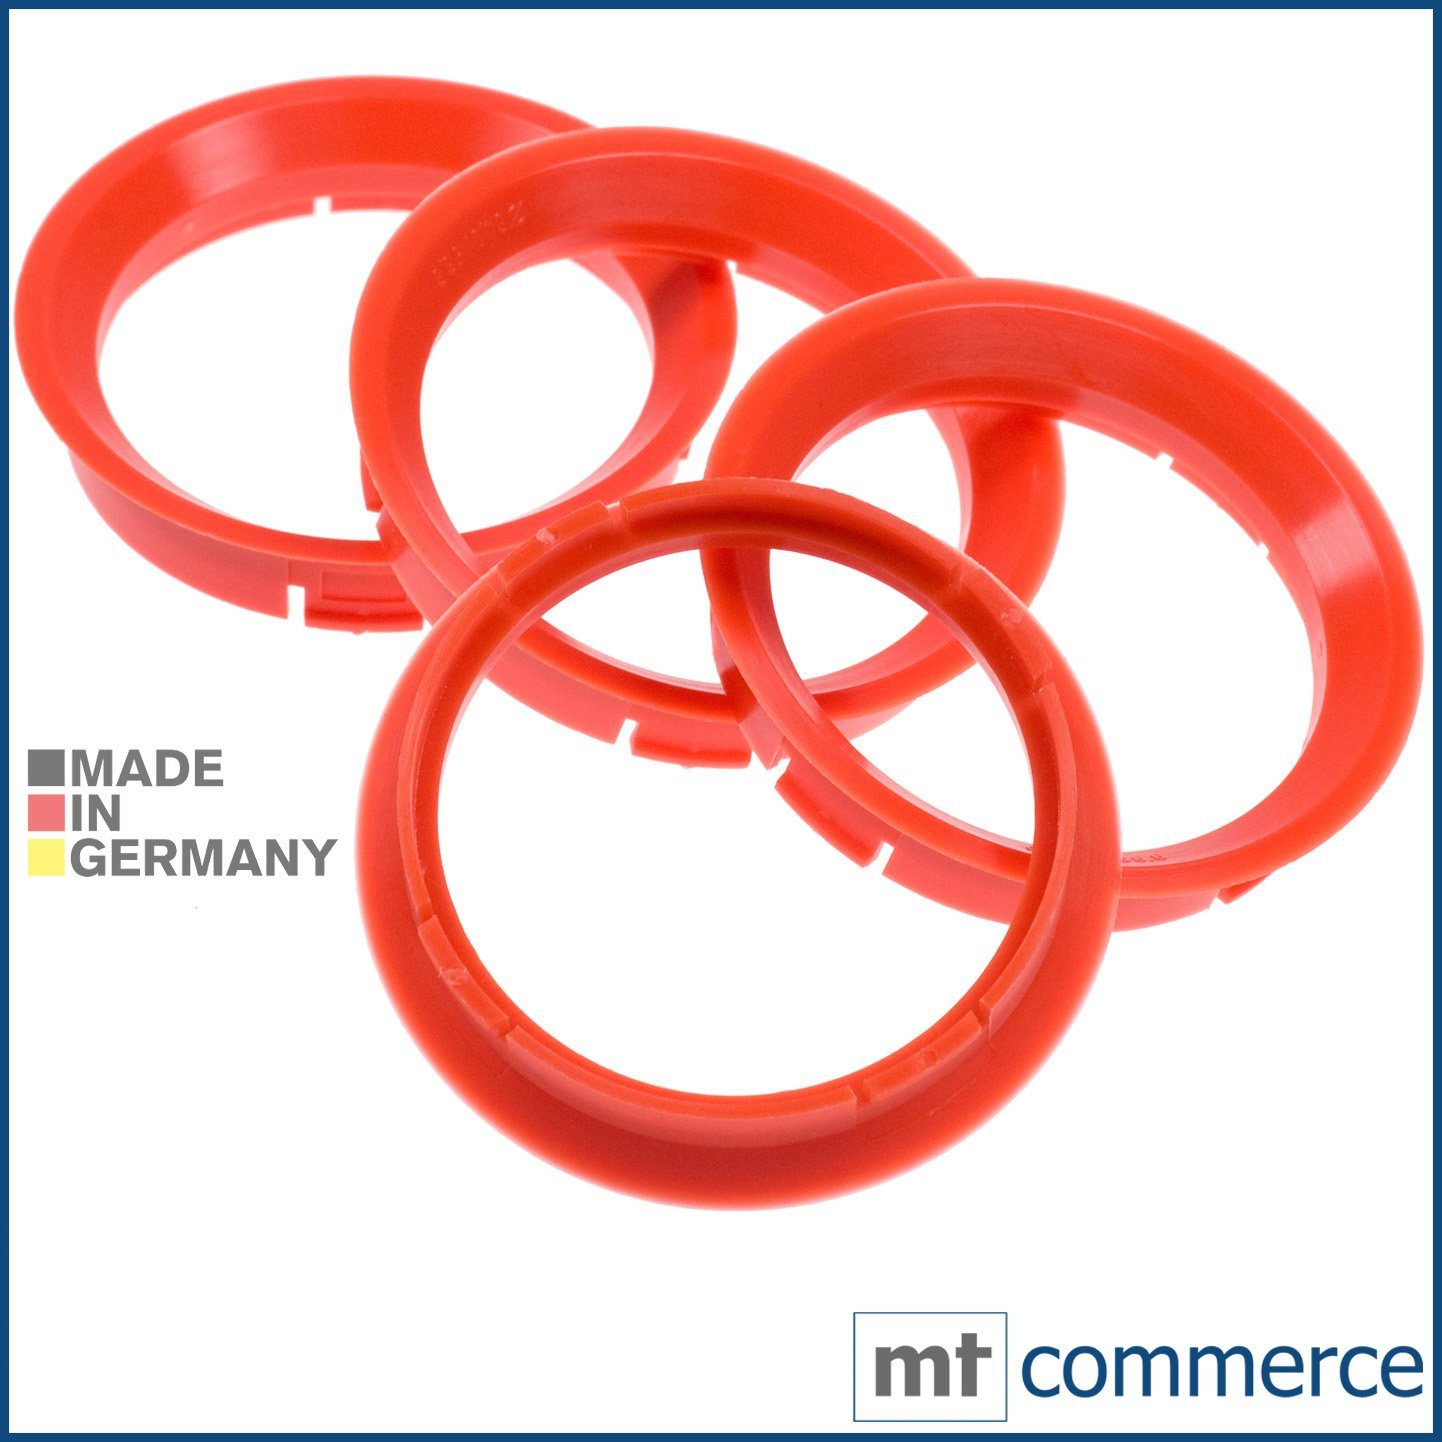 RKC Reifenstift 4X Zentrierringe blutorange Felgen Ringe Made in Germany, Maße: 64,0 x 56,6 mm